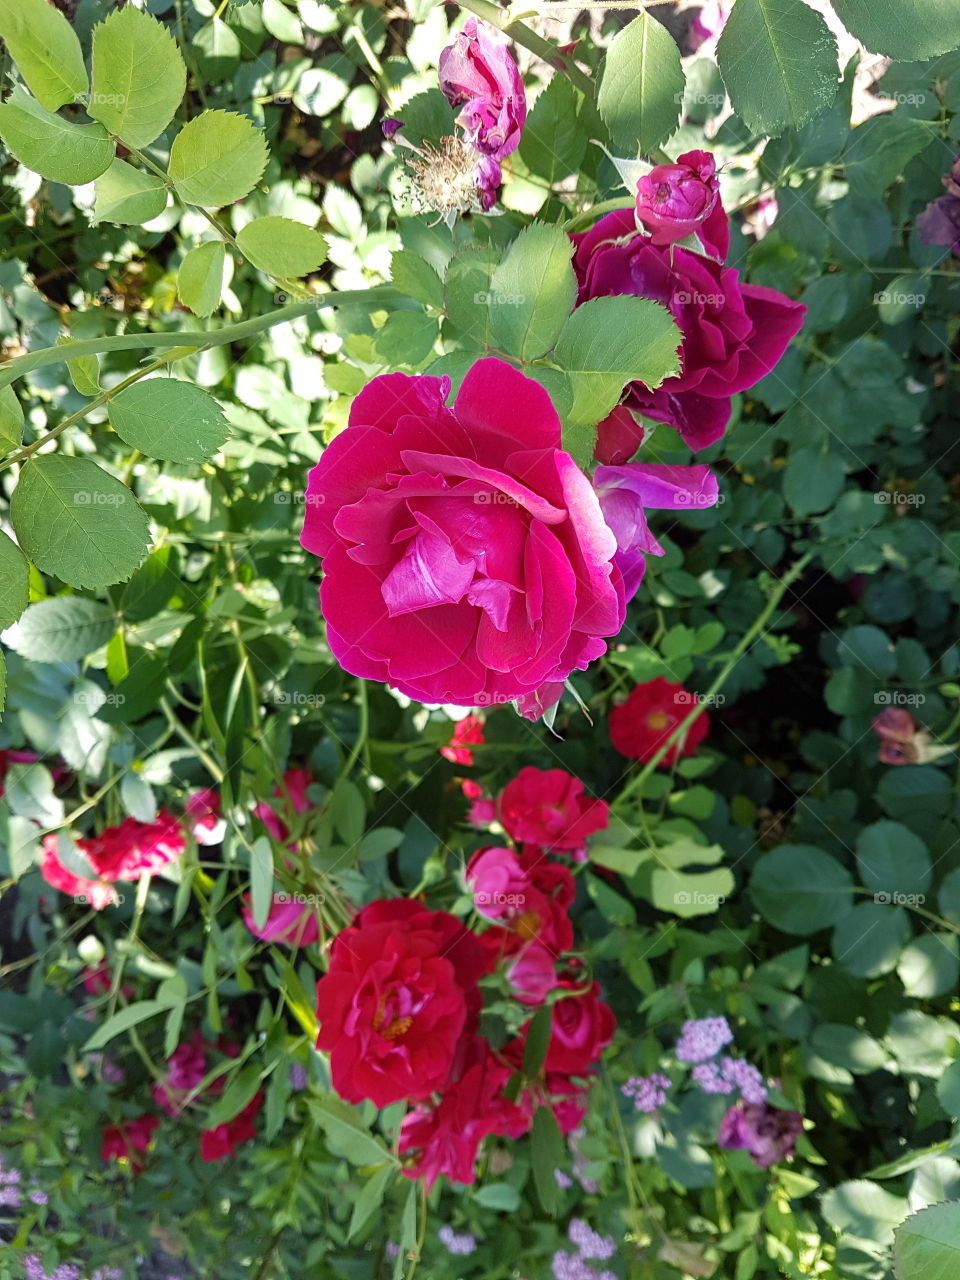 Roses in flower garden